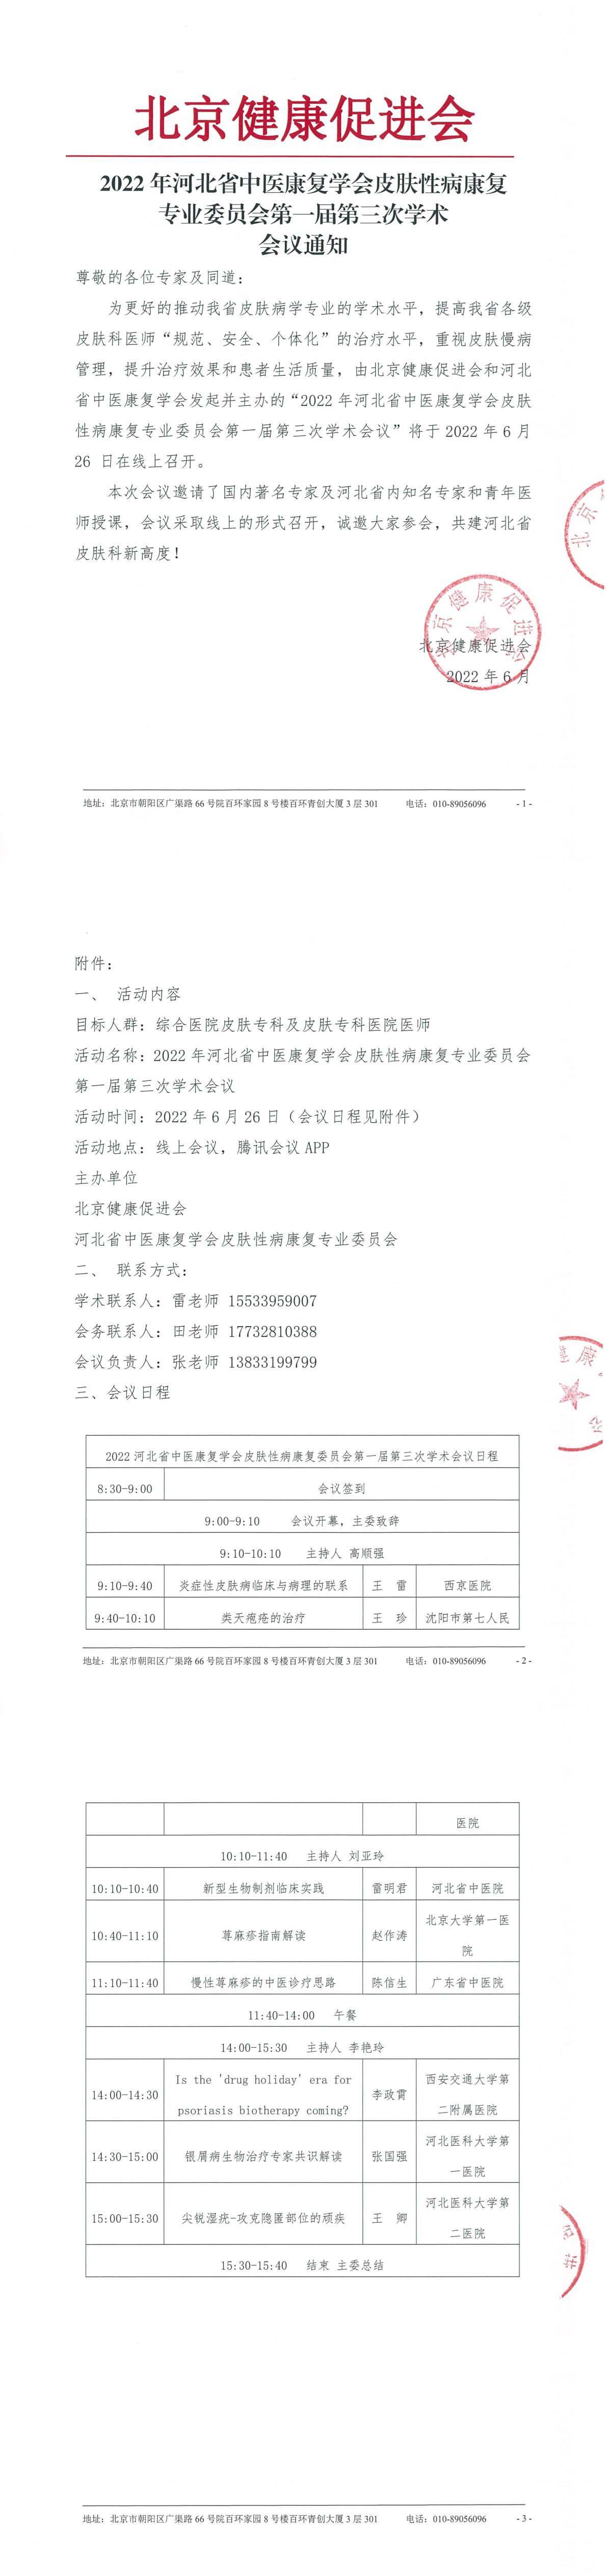 20220601-会议通知-2022年河北省中医康复学会皮肤性病康复-1.jpg